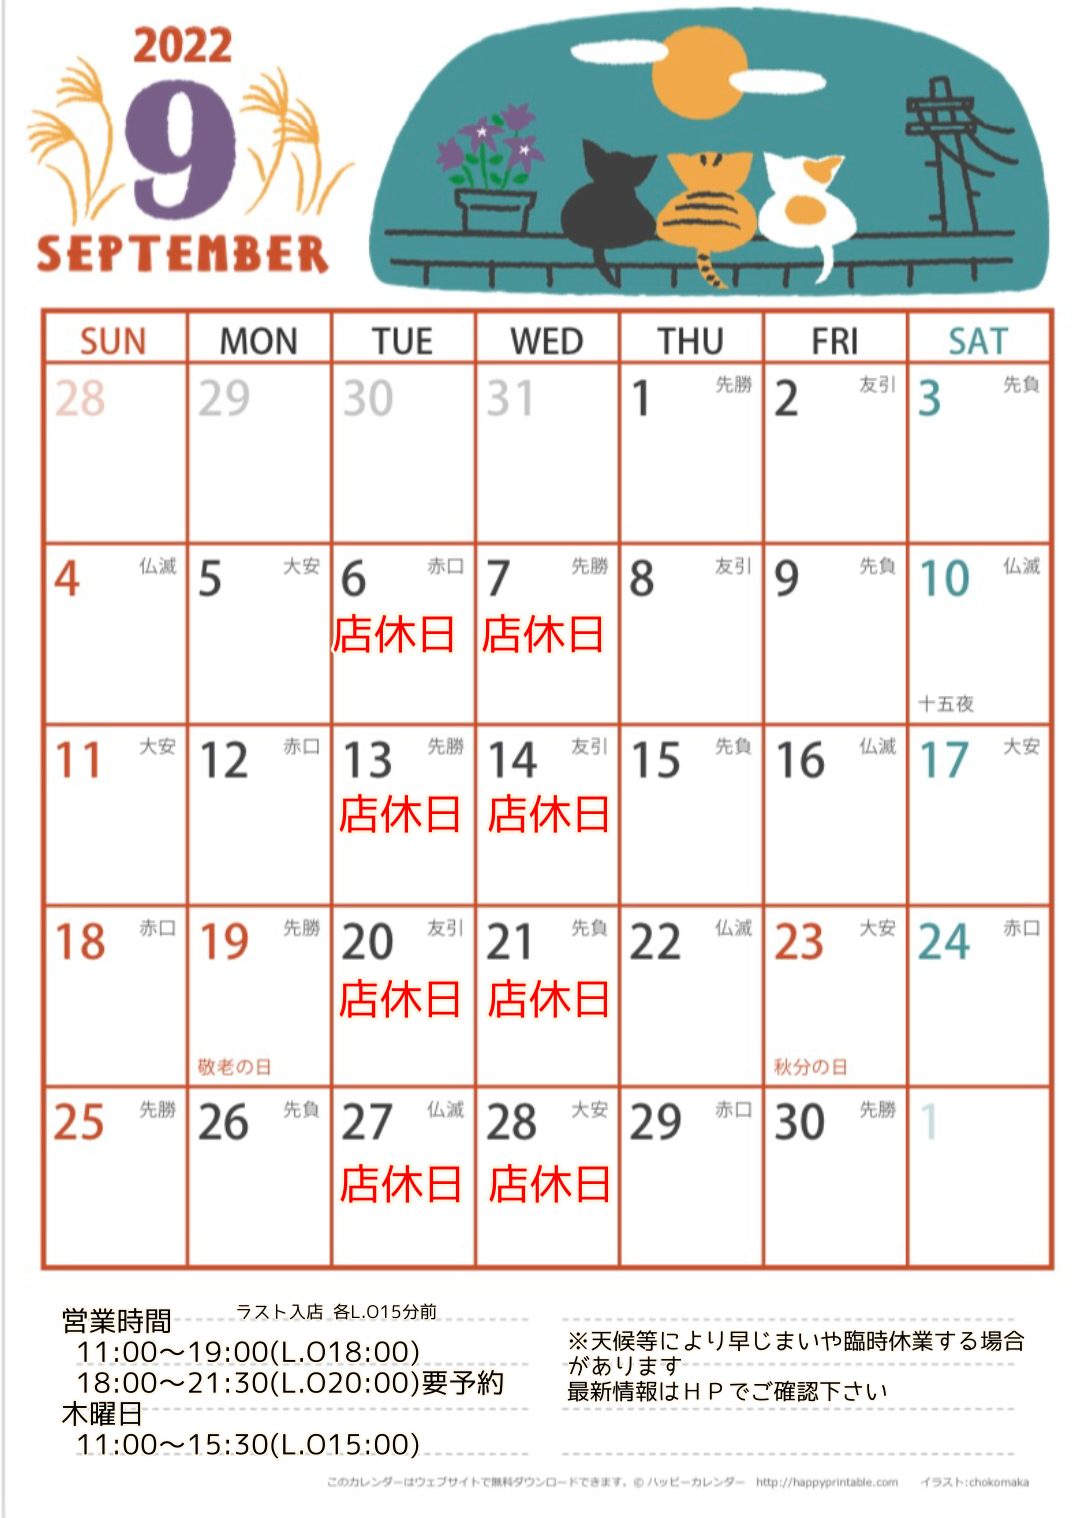 <span class="title">9月のカレンダー</span>